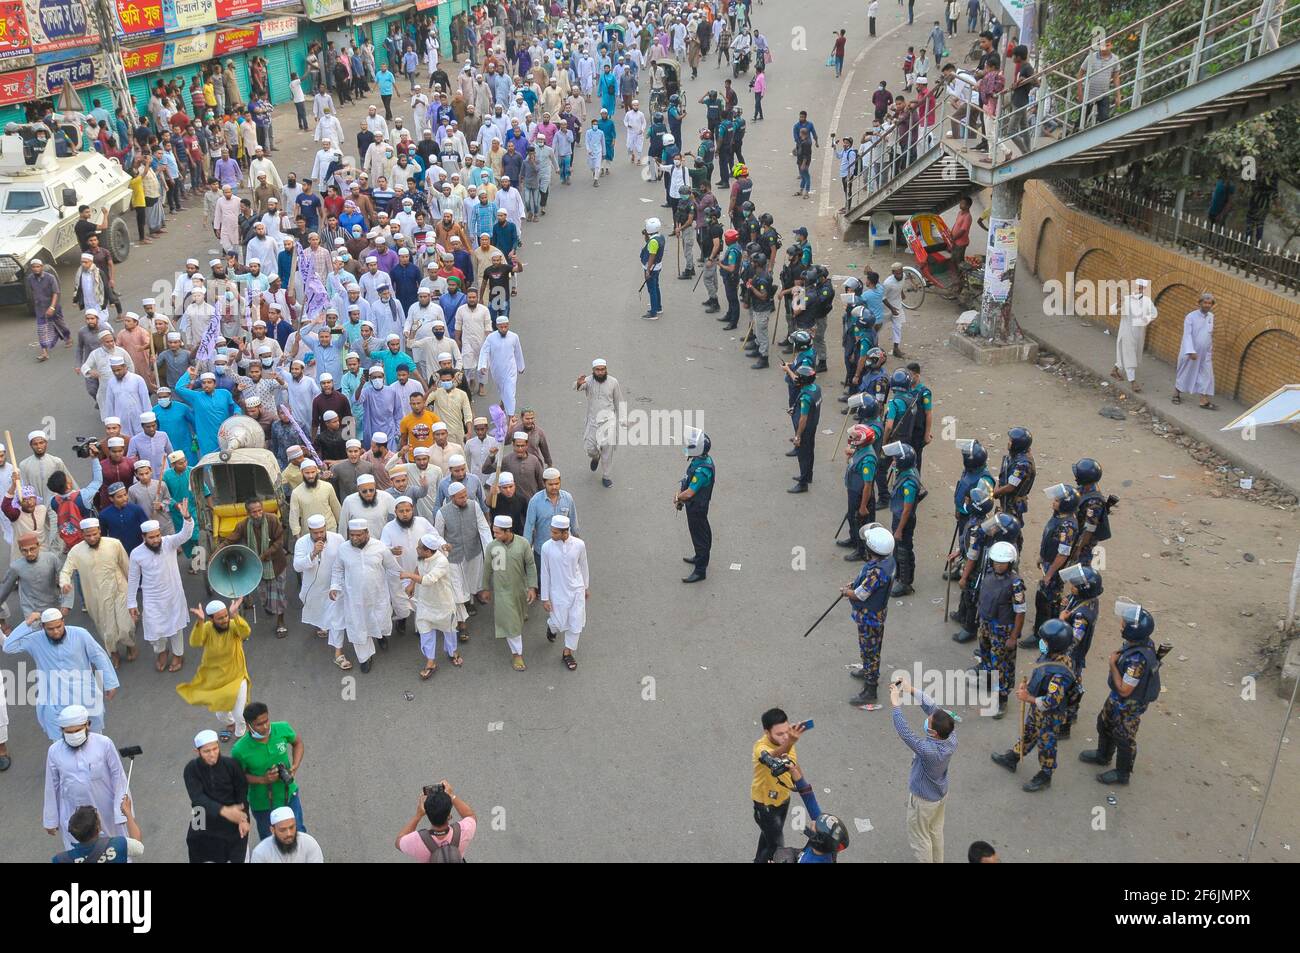 Al menos una docena de personas resultaron heridas en enfrentamientos entre la policía y los manifestantes en Bangladesh, ya que la violencia se propagó por todo el país de protestas contra la visita del líder nacionalista hindú de la India, la llegada de Narendra Modi. Sylhet, Bangladesh. Foto de stock